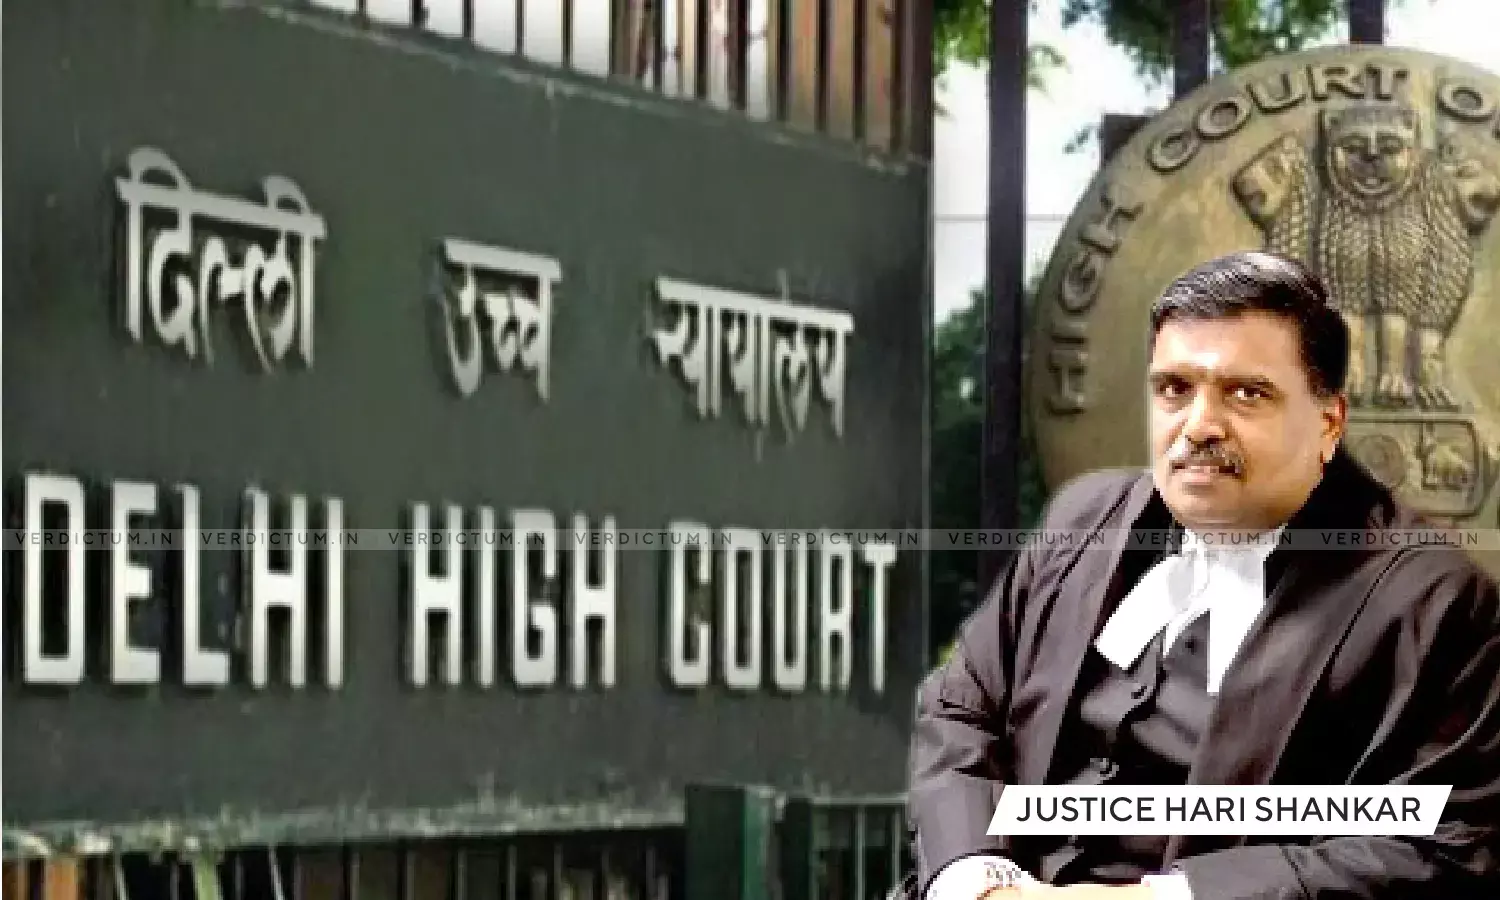 Delhi HC in trademark violation case by Louis Vuitton against